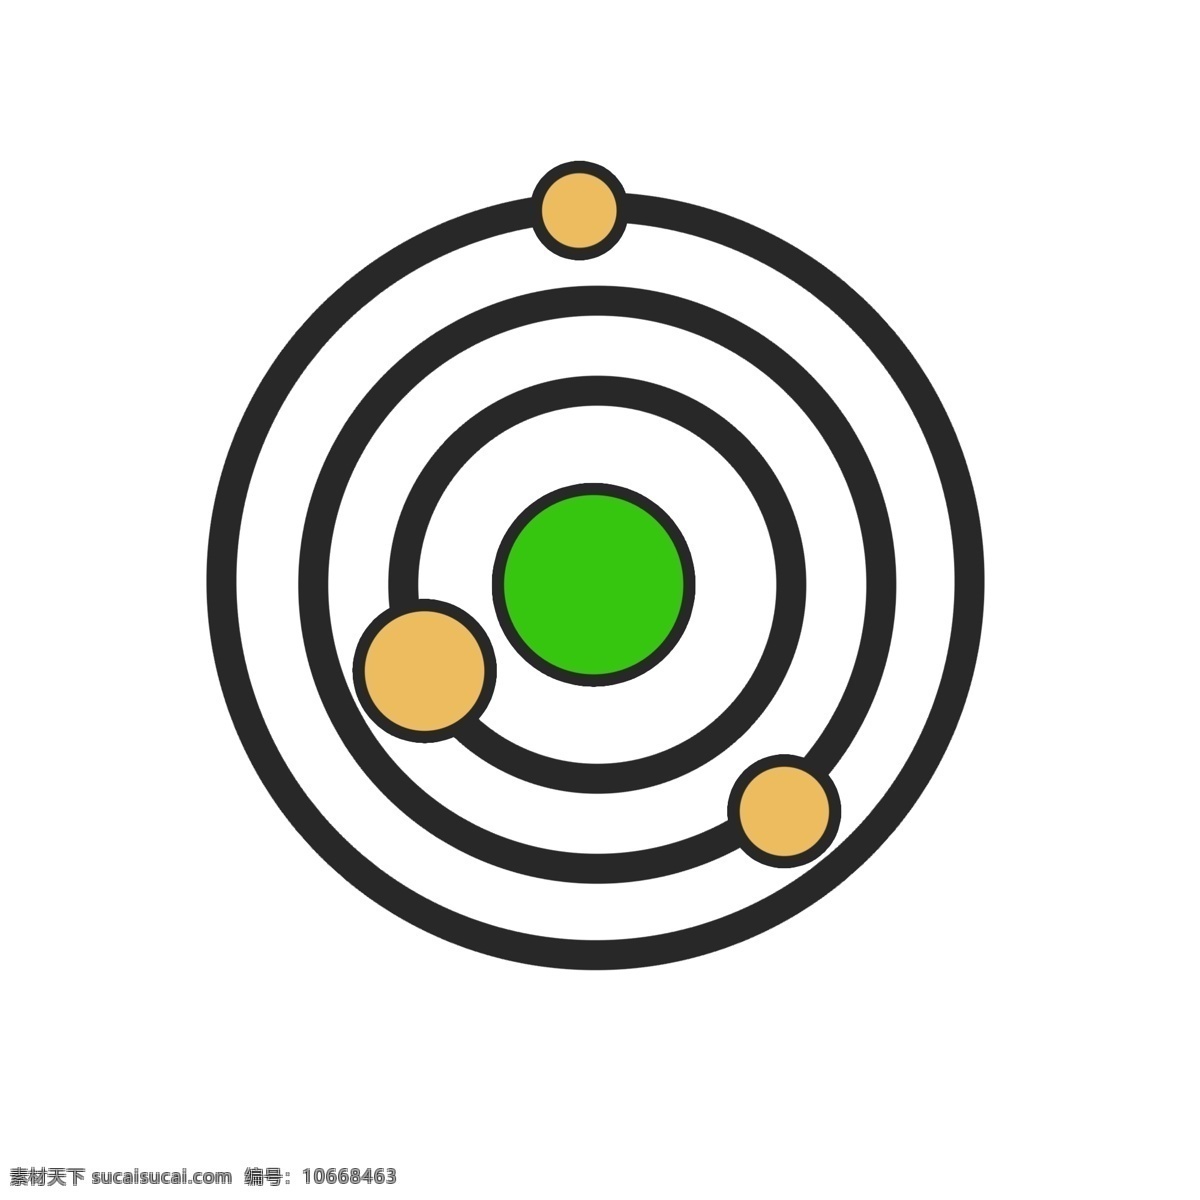 星球图标 线性 扁平 手绘 单色 多色 简约 精美 可爱 商务 圆润 方正 立体 图标 icon 科技 宇宙 星球 卫星